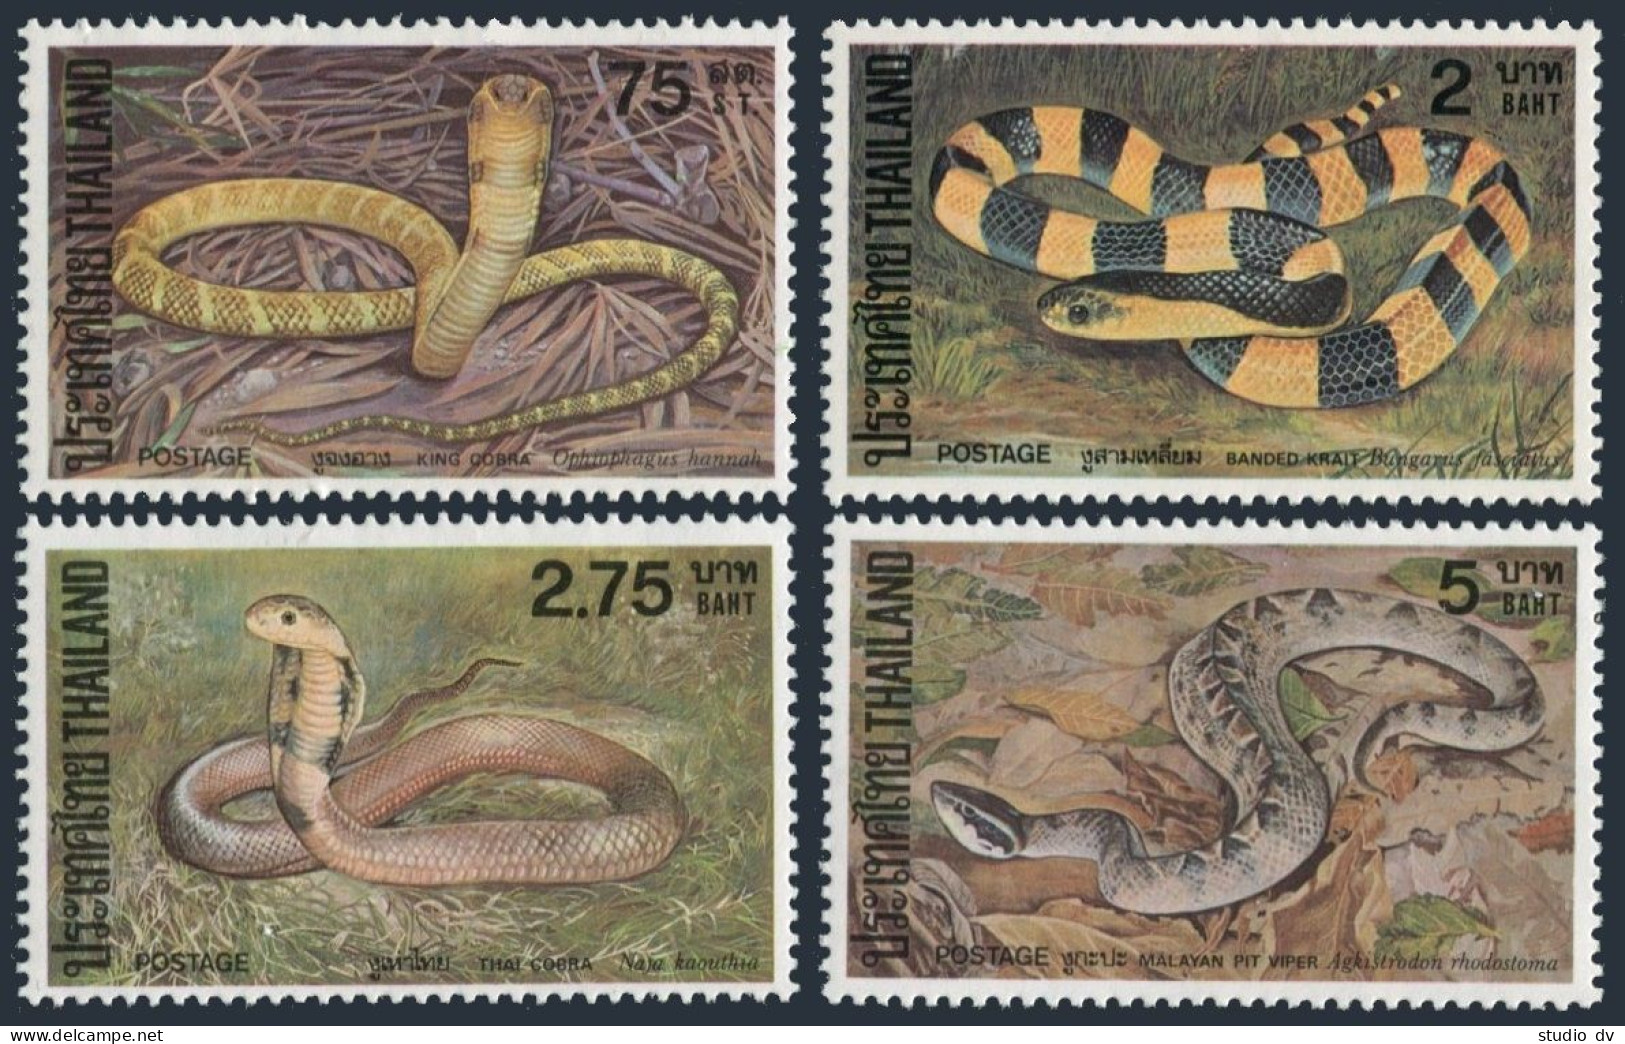 Thailand 977-980,MNH.Michel 989-992. King Cobra,Krait,Thai Cobra,Viper.1981. - Thaïlande